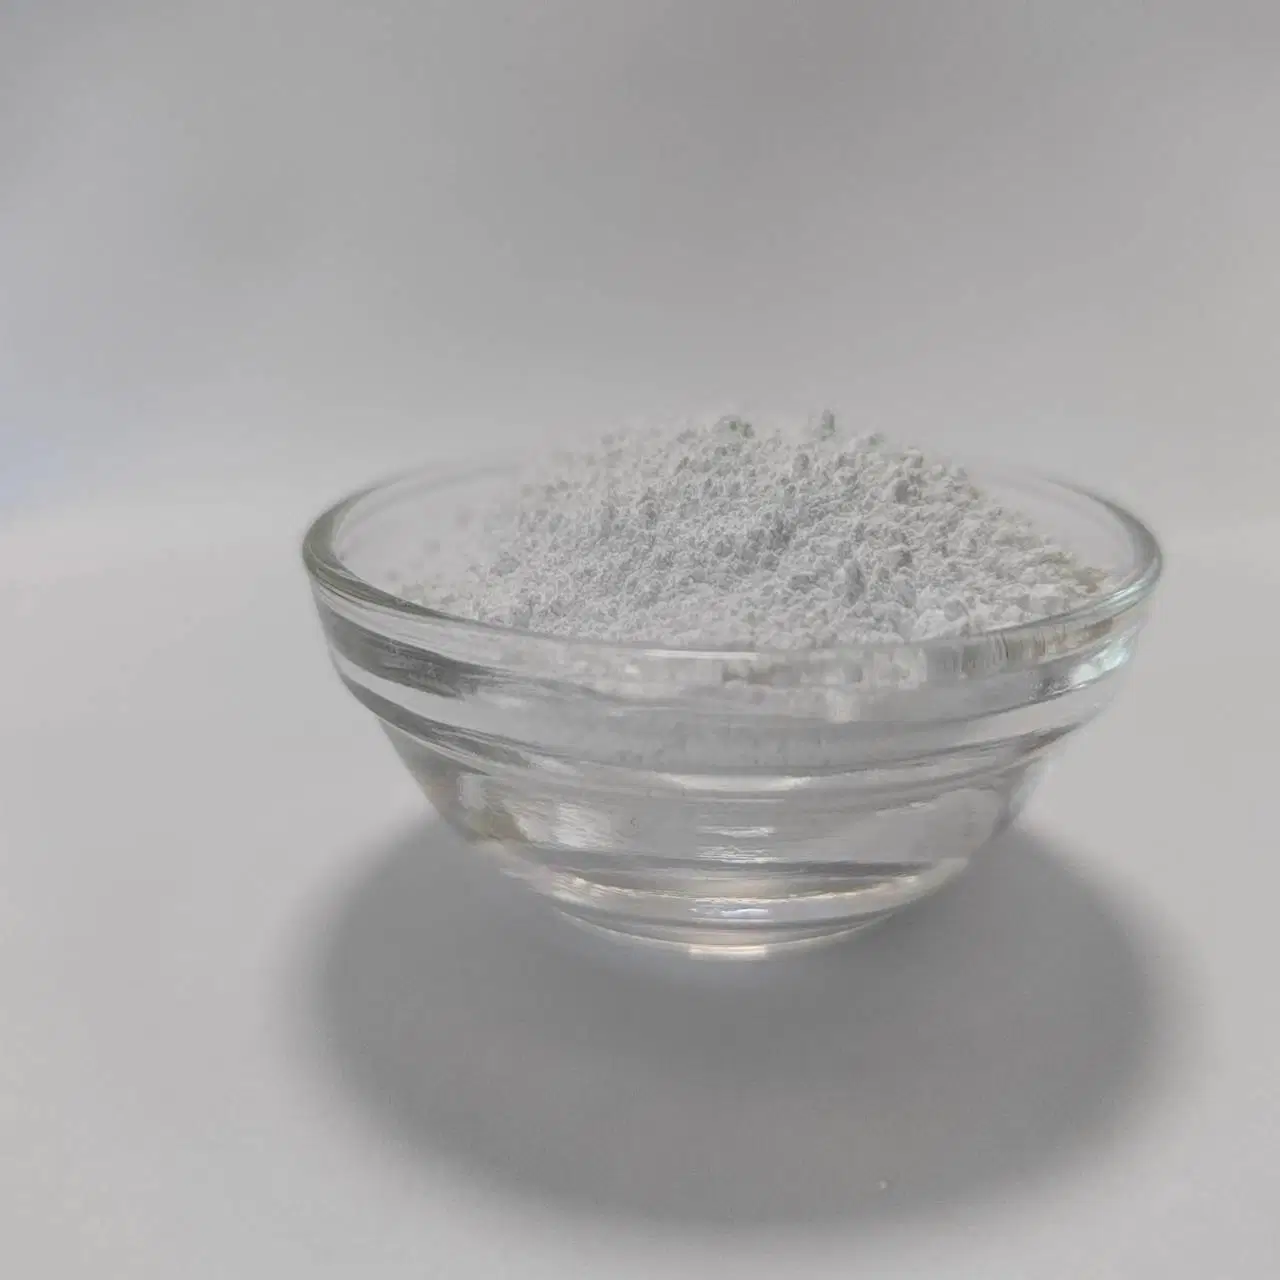 Gummibeschichtung Verwendet Znco3 Basic 57% Hochwertige Zinkcarbonat